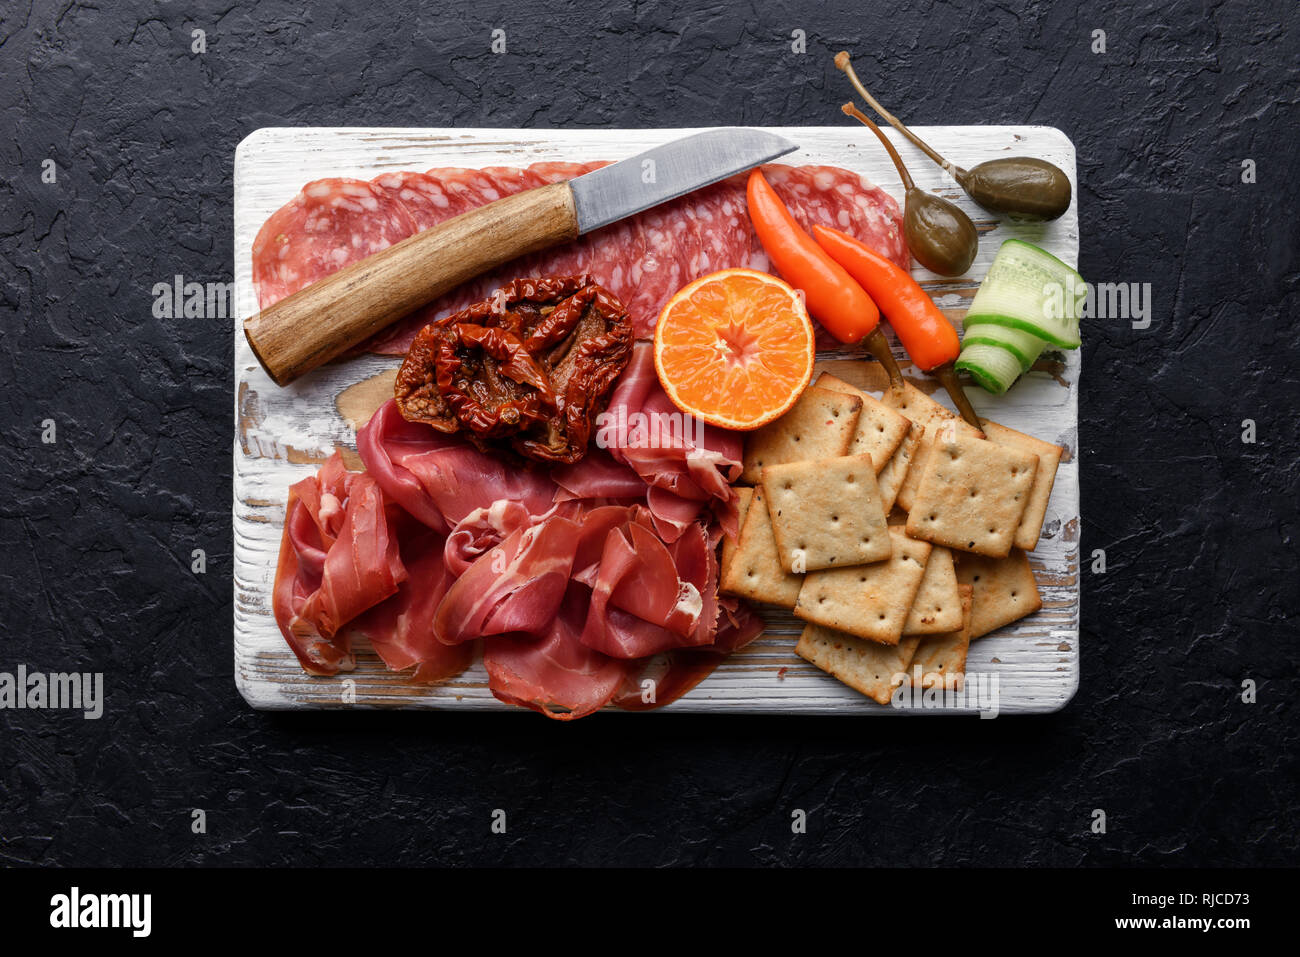 Antipasti italiani snack set. Capperi, prosciutto, salami e crackers su nero tabella di grunge, vista dall'alto. Fotografia di cibo Foto Stock